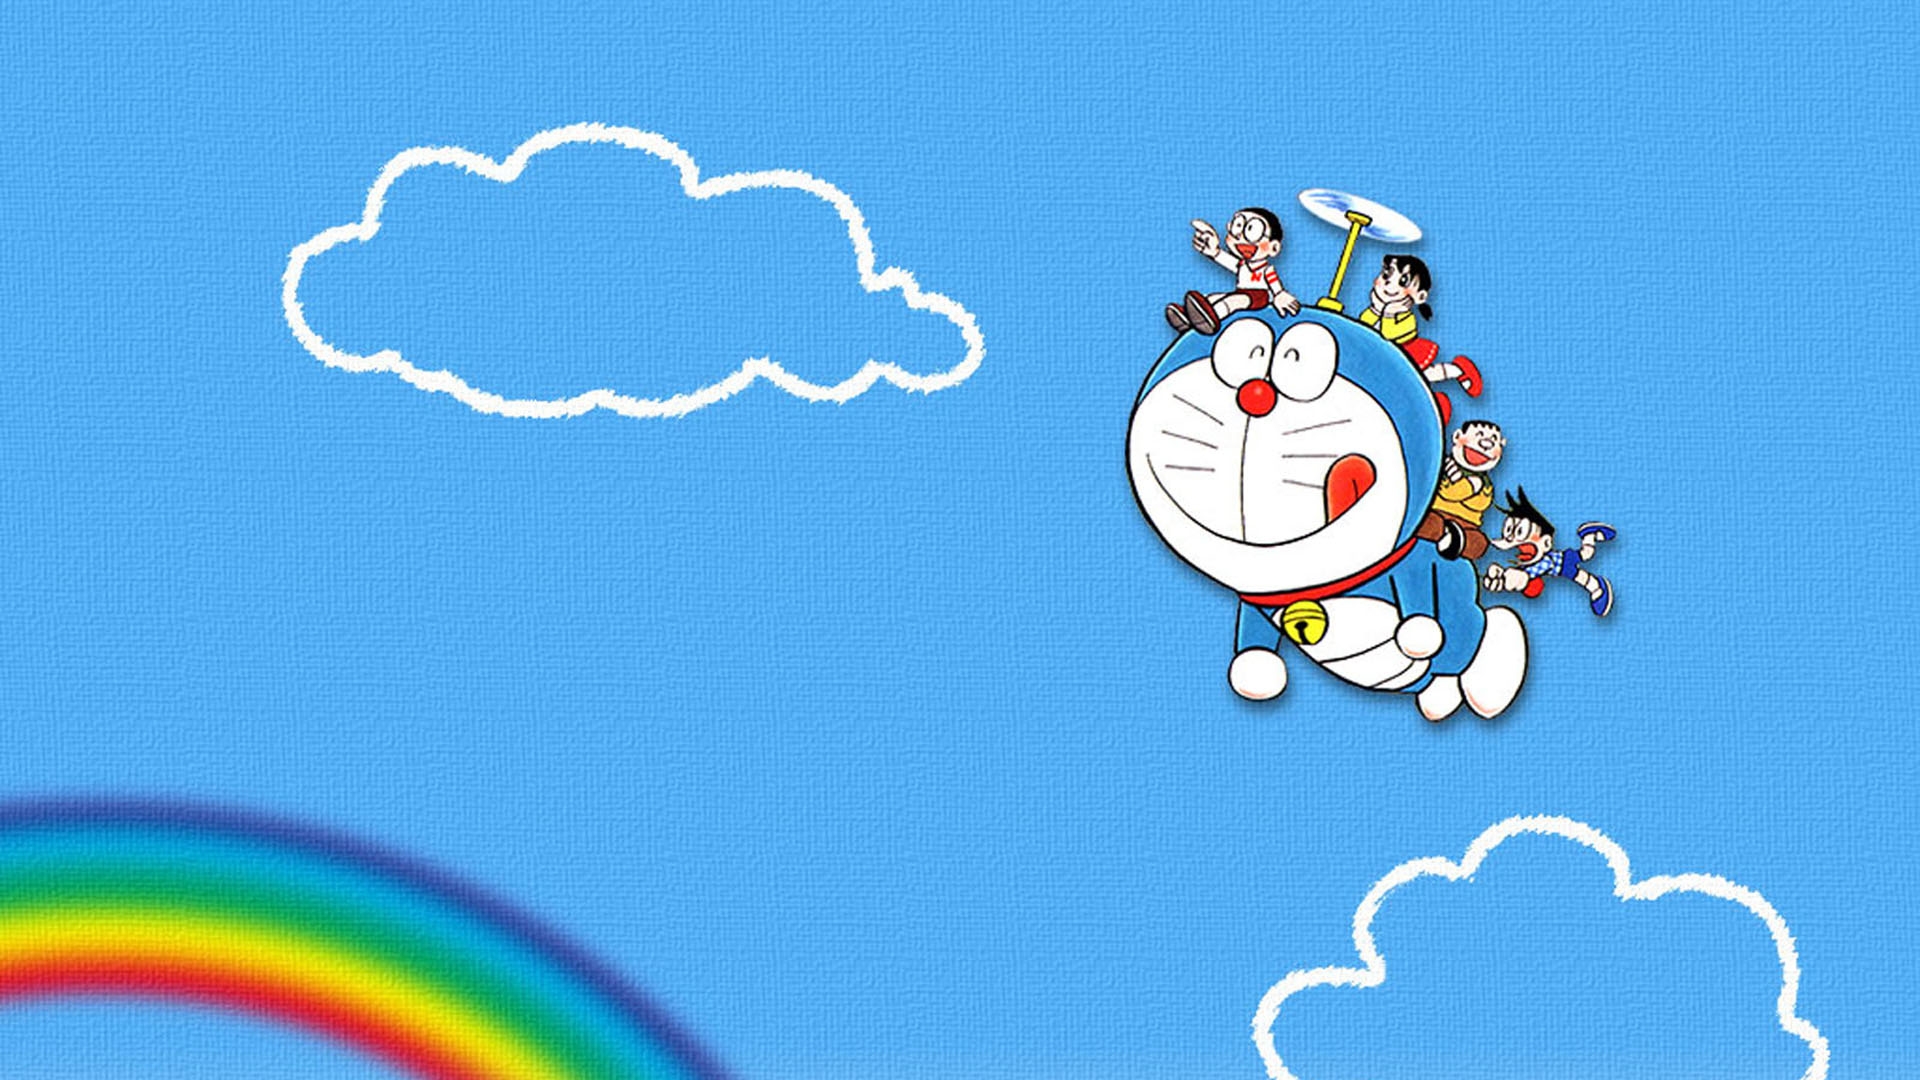 Doraemon Wallpaper - Wallpaper, High Definition, High Quality, Widescreen